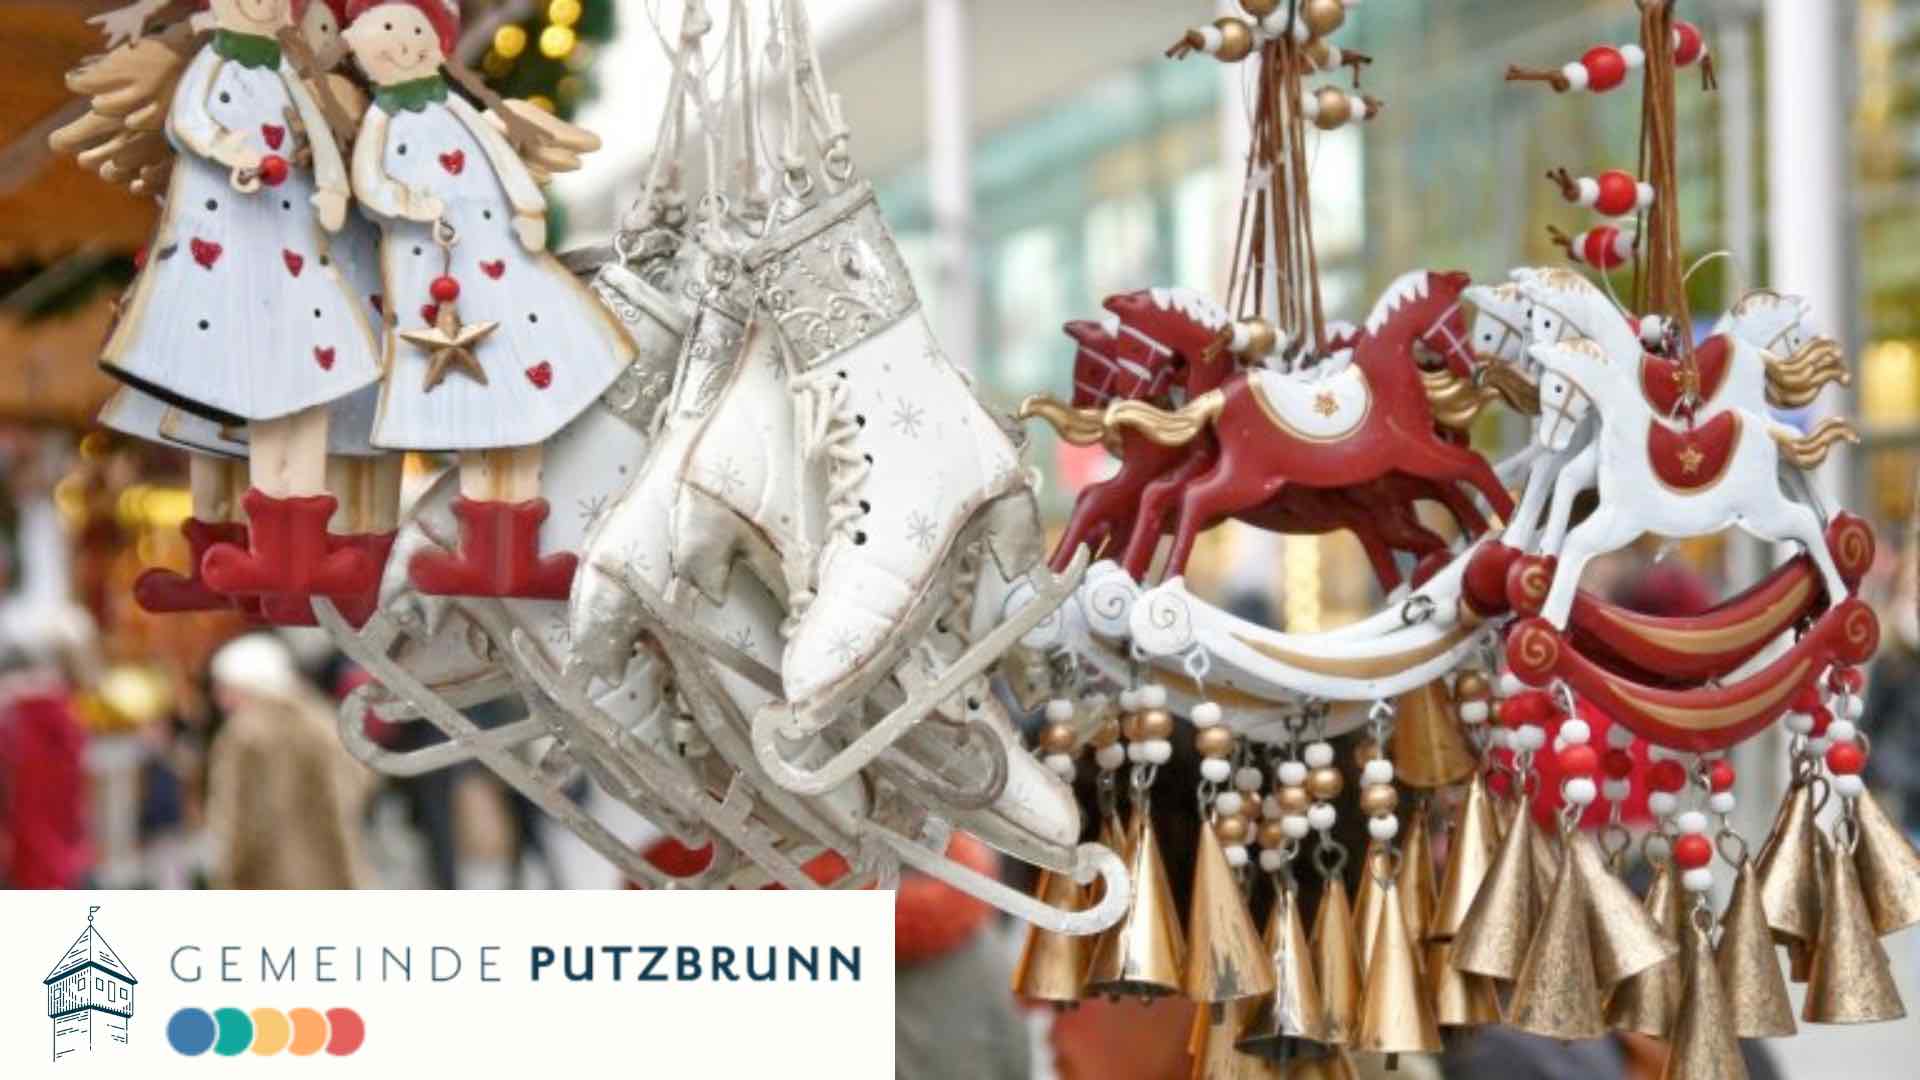 Putzbrunner Christkindlmarkt und Hobbykünstlermarkt "Kreuz und Quer"